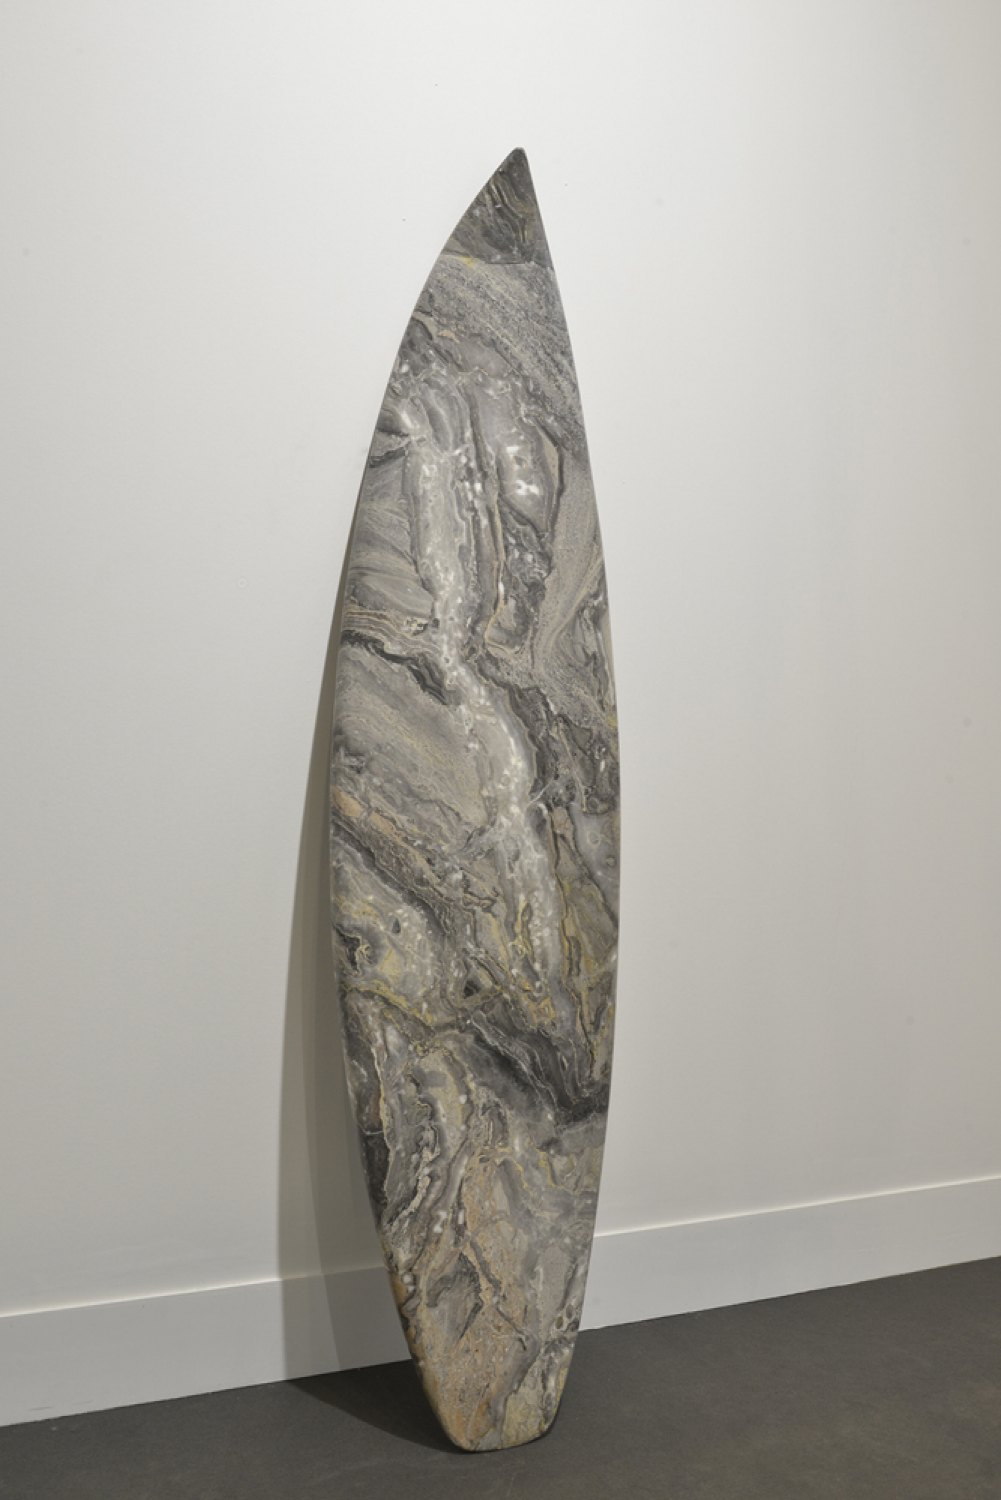 Reena Spaulings Mollusk (Grigio Orobico), 2014 Marble, 199 × 51 × 4 cm